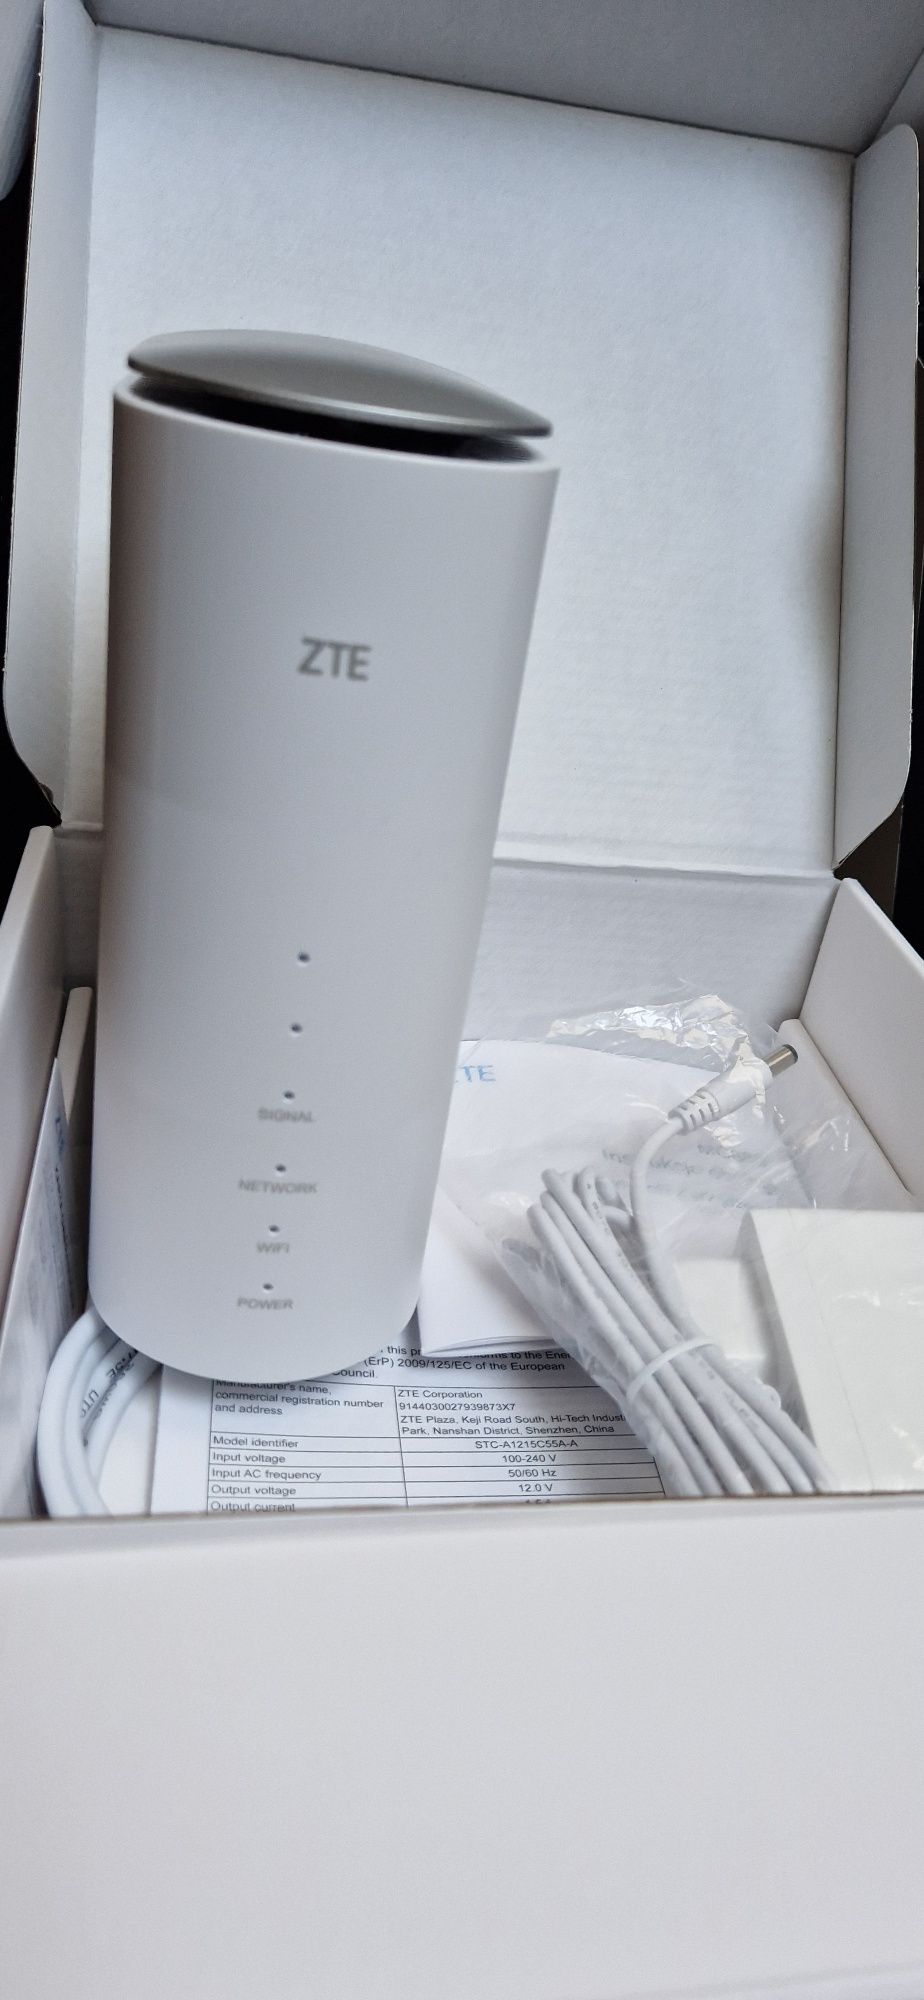 ZTE Router MC888 5G